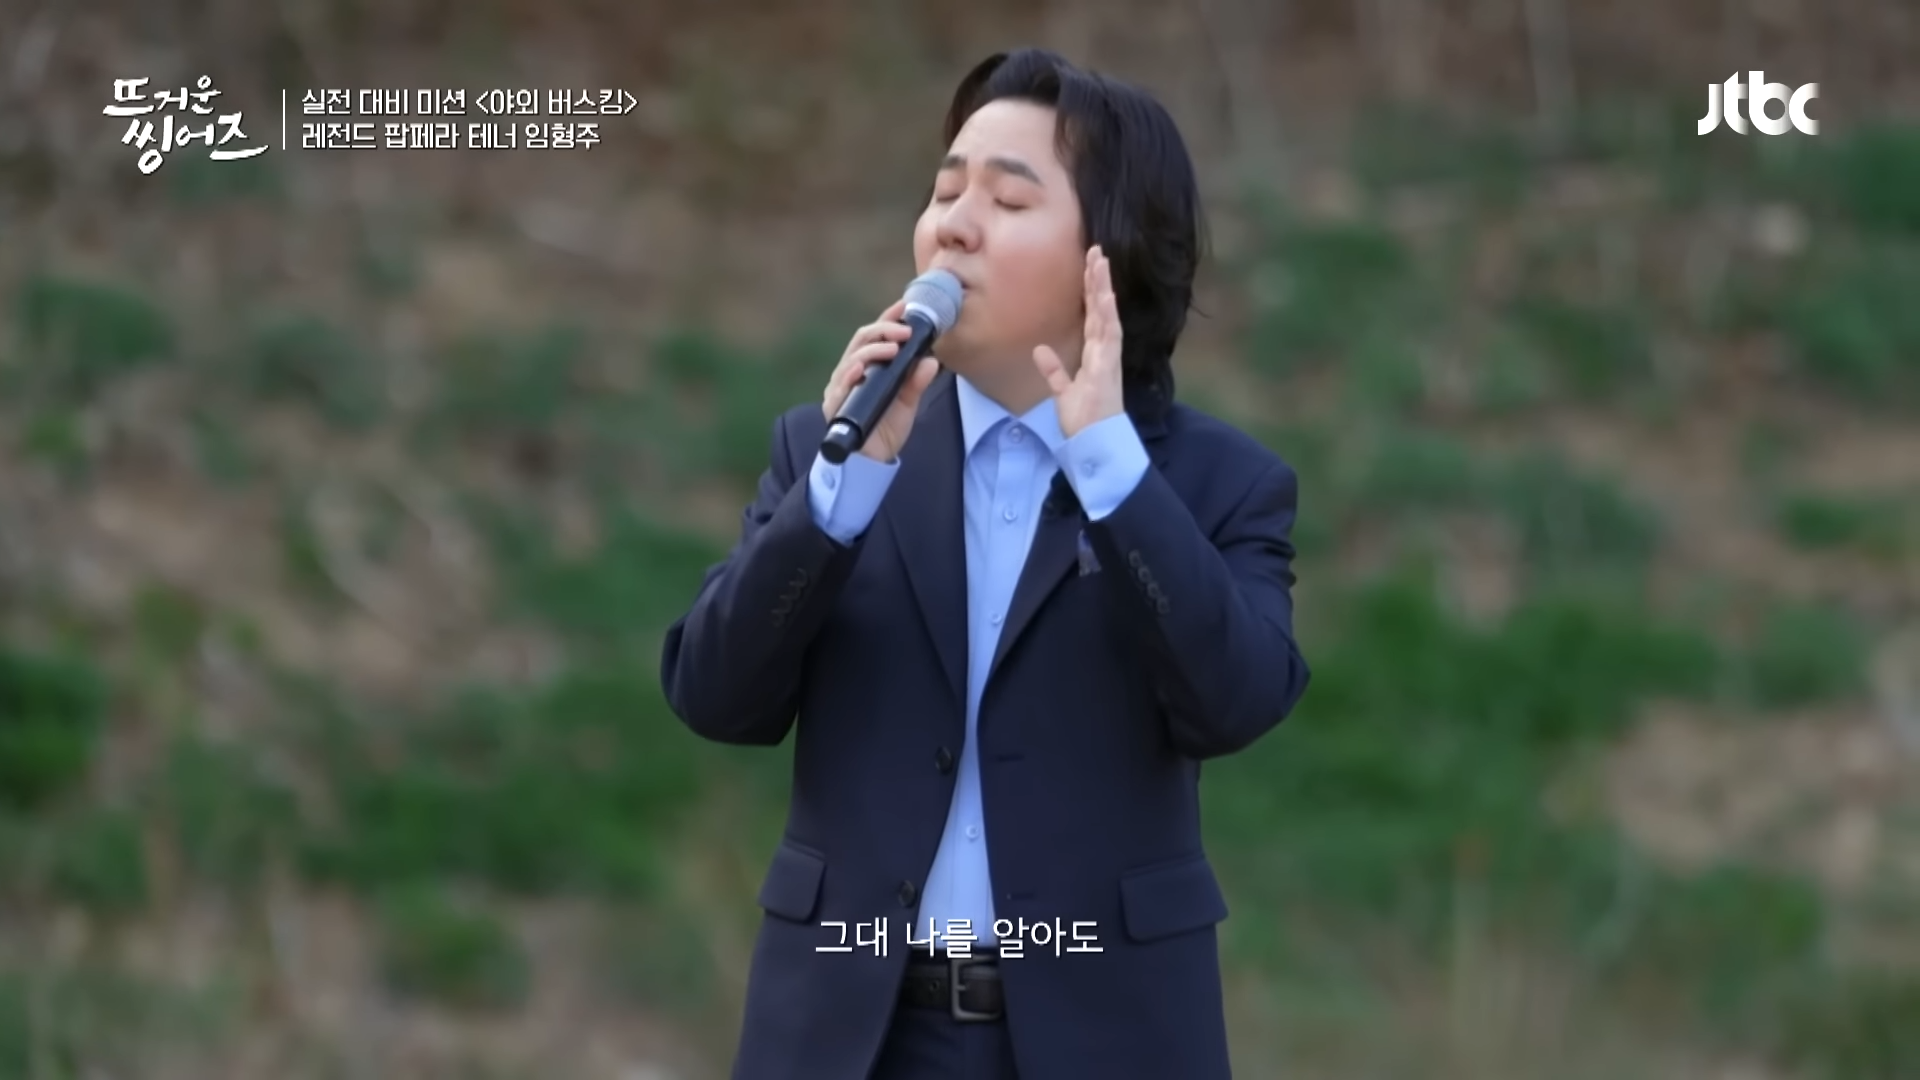 ㄴ상상도 못한 초.특.급. 게스트ㄱ 임형주(Lim Hyung-joo) 〈사랑이 지나가면〉♪ 뜨거운 씽어즈(hotsingers) 9회 _ JTBC 220516 방송 0-32 screenshot